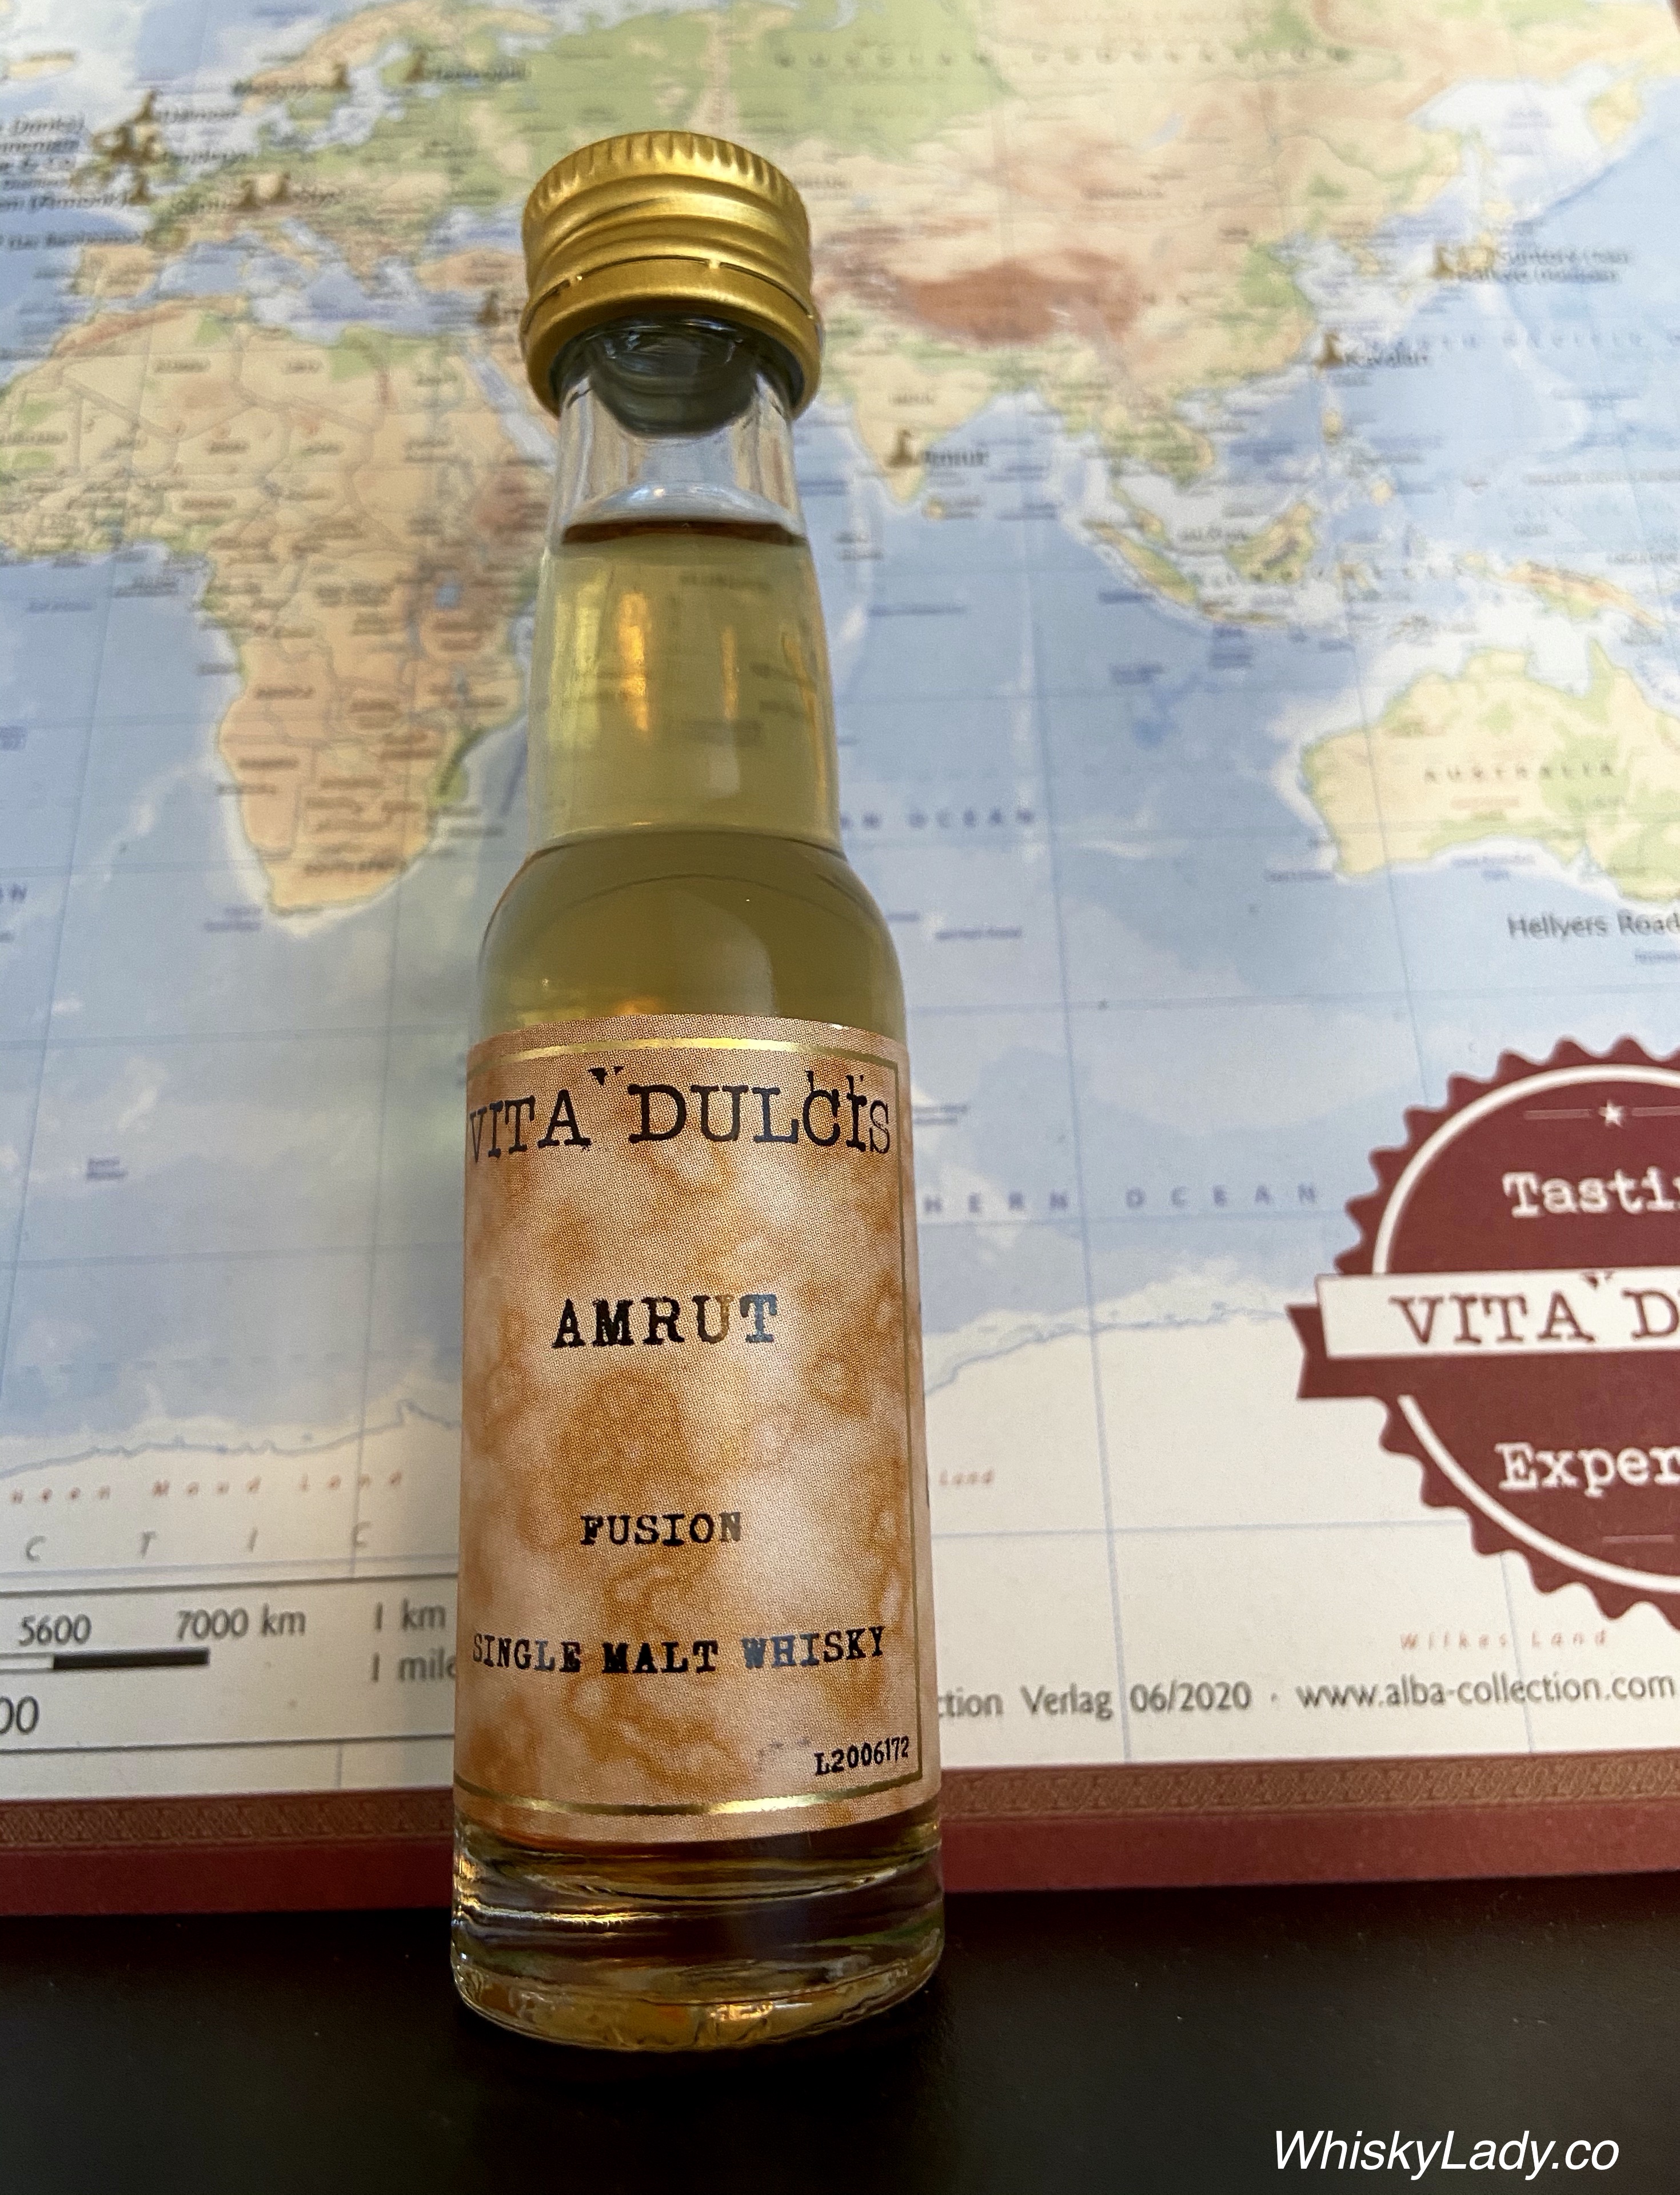 Vita Dulcis 1 – India's Amrut Fusion 50% | Whisky Lady